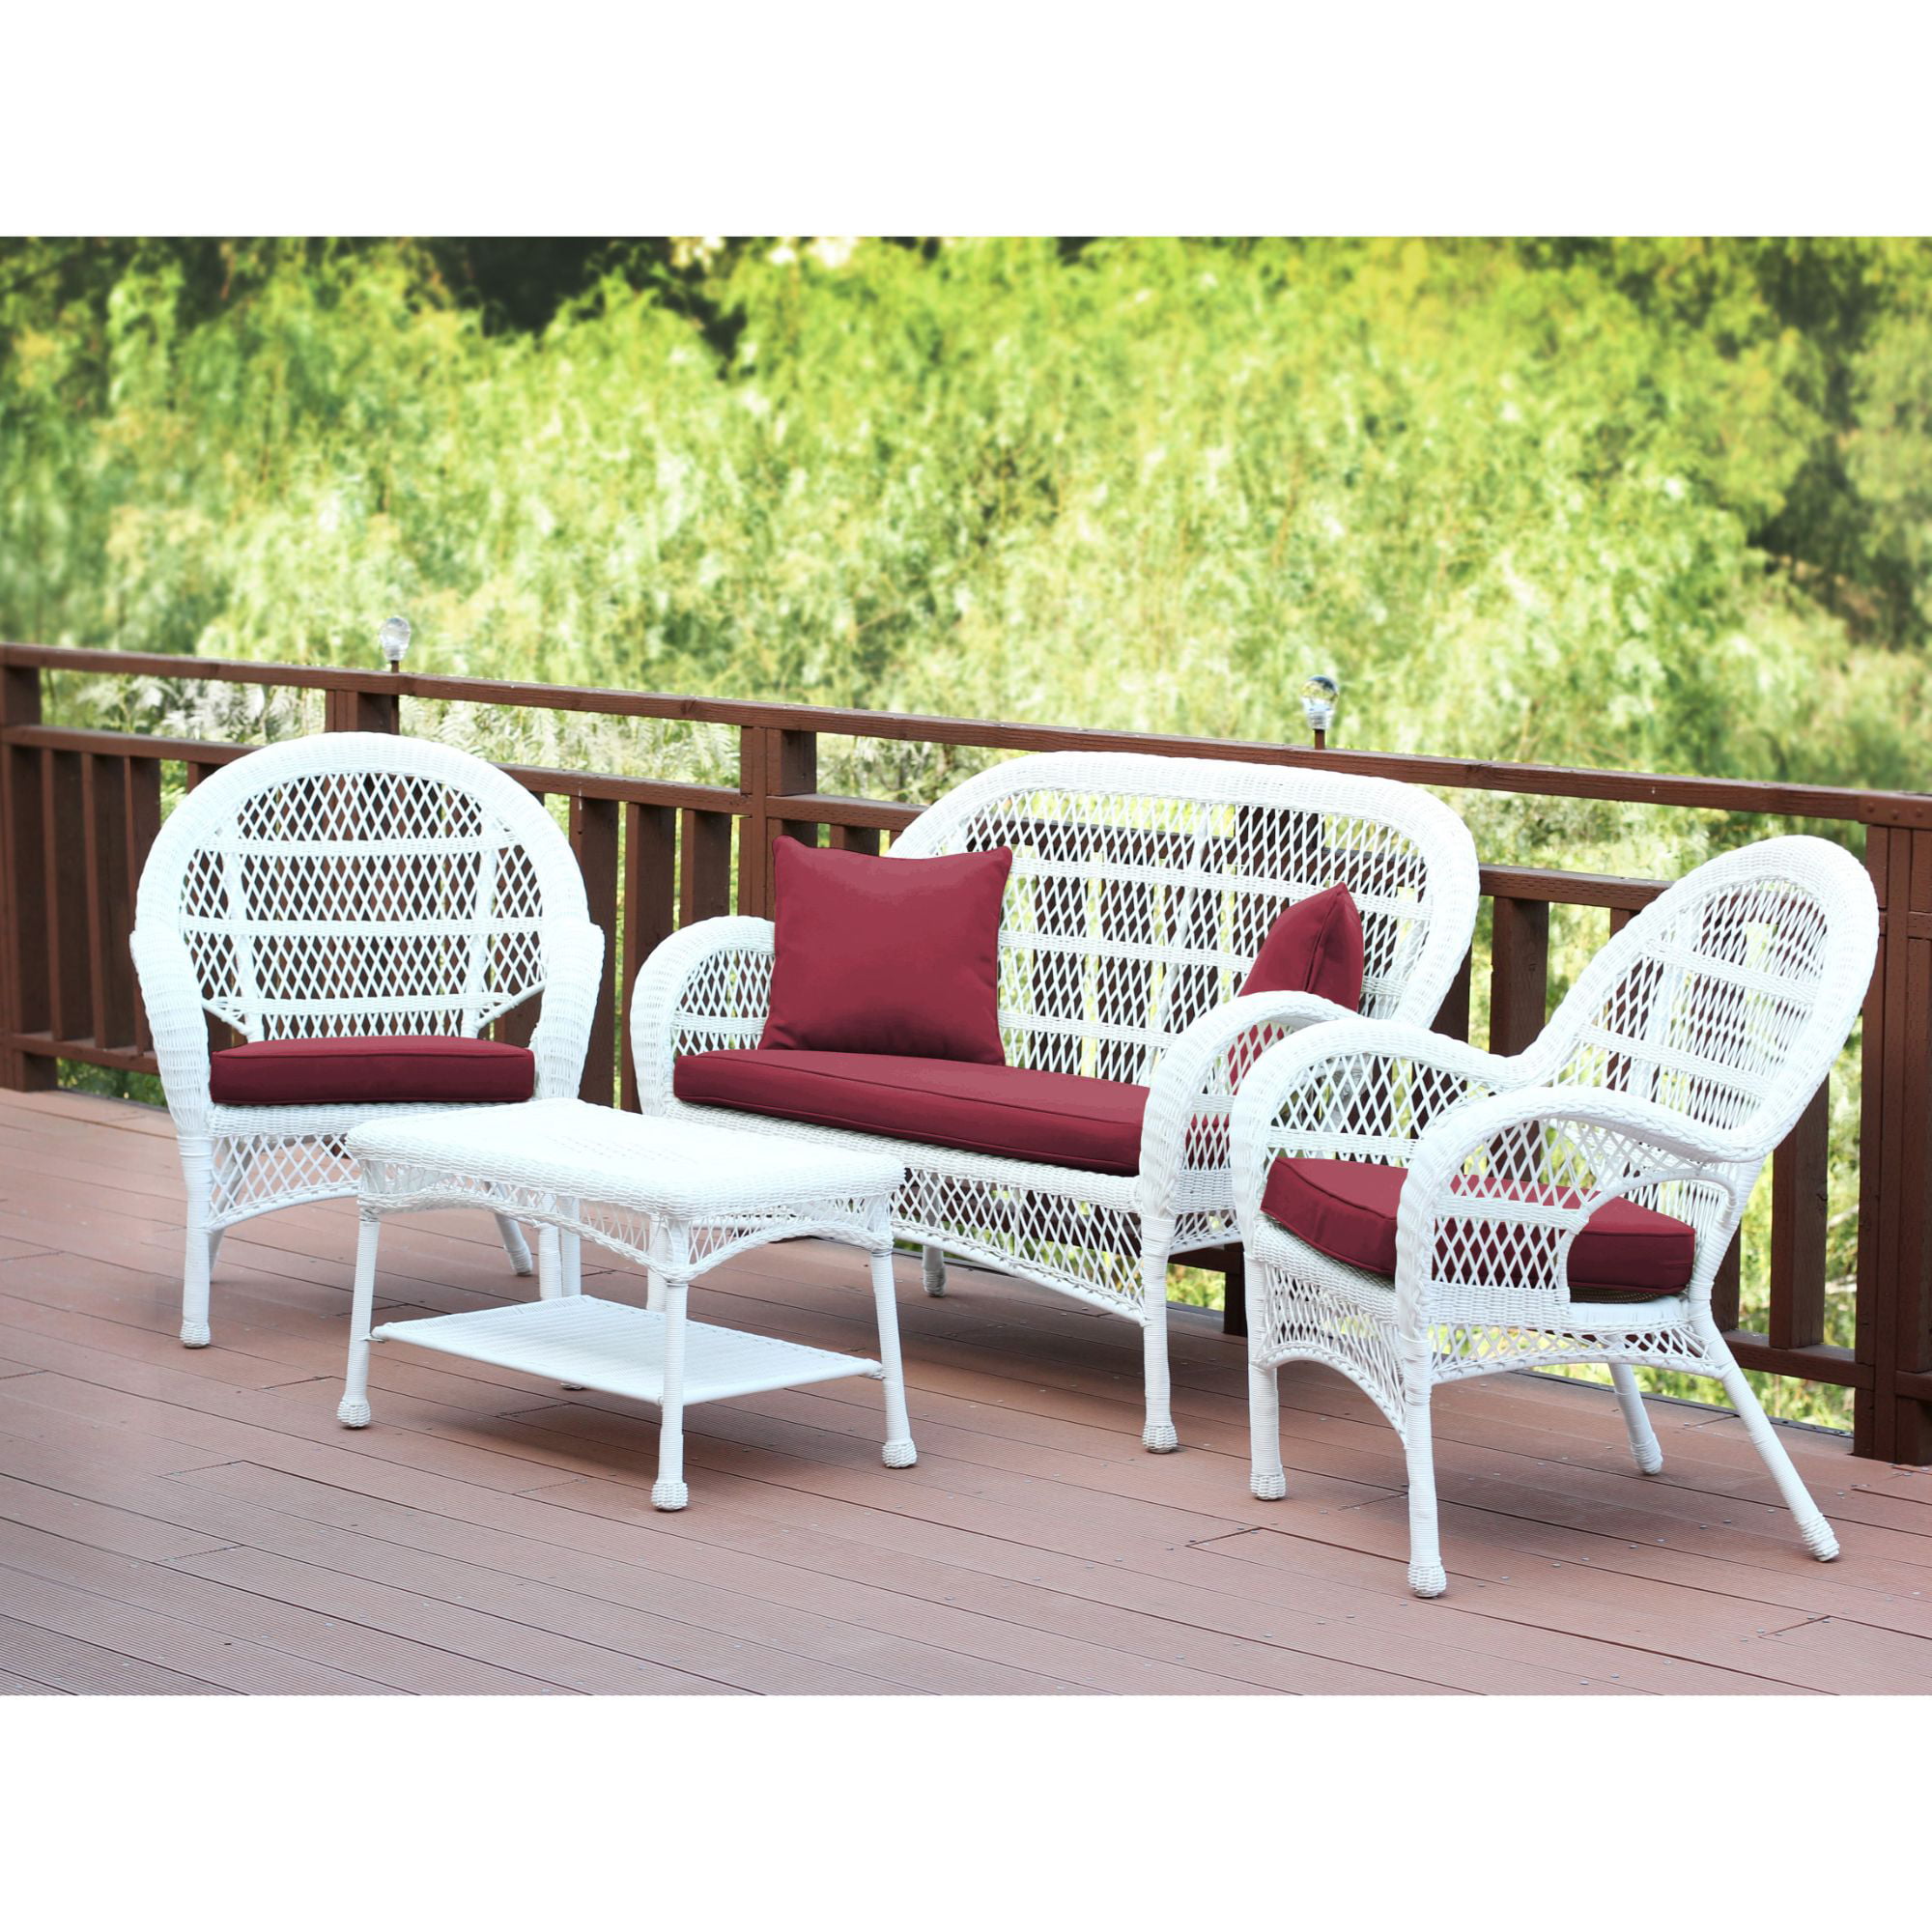 4-Piece White Wicker Outdoor Furniture Patio Conversation Set - Red